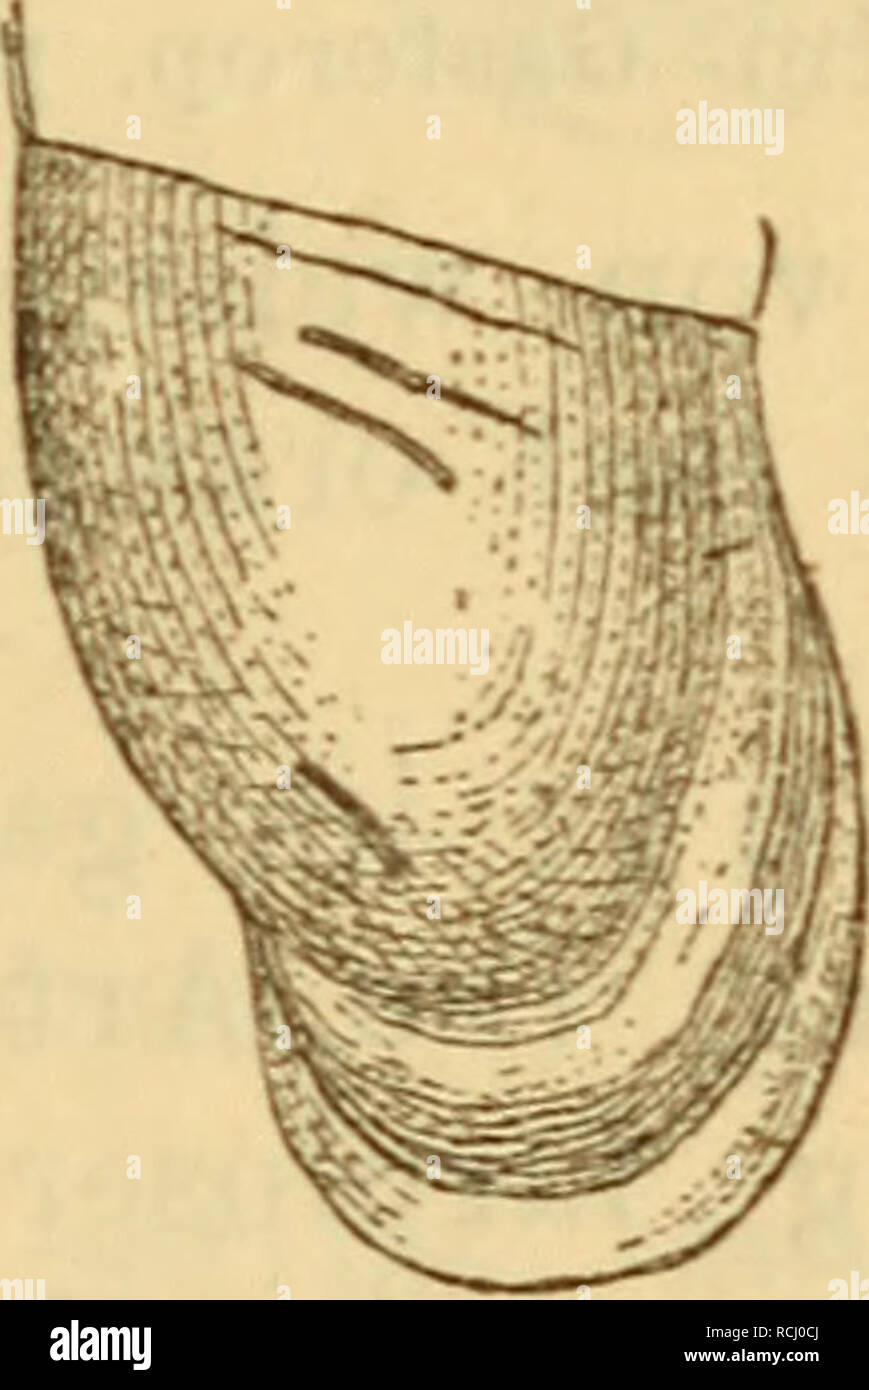 . Die Mollusken-Fauna Mitteleuropa's. Mollusks. Cl. fimbriata. Gehäuse: kaum geritzt, spindelförmig, mit verschmä- lert ausgezogener Spitze, festschalig, fein gestreift, braun- gelb, durchscheinend^ ziemlich glänzend; Umgänge 11—12, ziemlich gewölbt, durch eine sehr bezeichnete Naht getrennt: Mündung birnförmig, schmal, Gaumen mit einer breiten, saumartigen, weissen Wulst belegt, die den Rand nie be- rührt, sondern zwischen sich und ihm einen feinen, dunk- leren Streifen freihält, auch ist sie nicht vollkommen pa- rallel dem Mundsaume, sondern tritt in der Mitte der Mün- dung mehr oder weniger Stock Photo